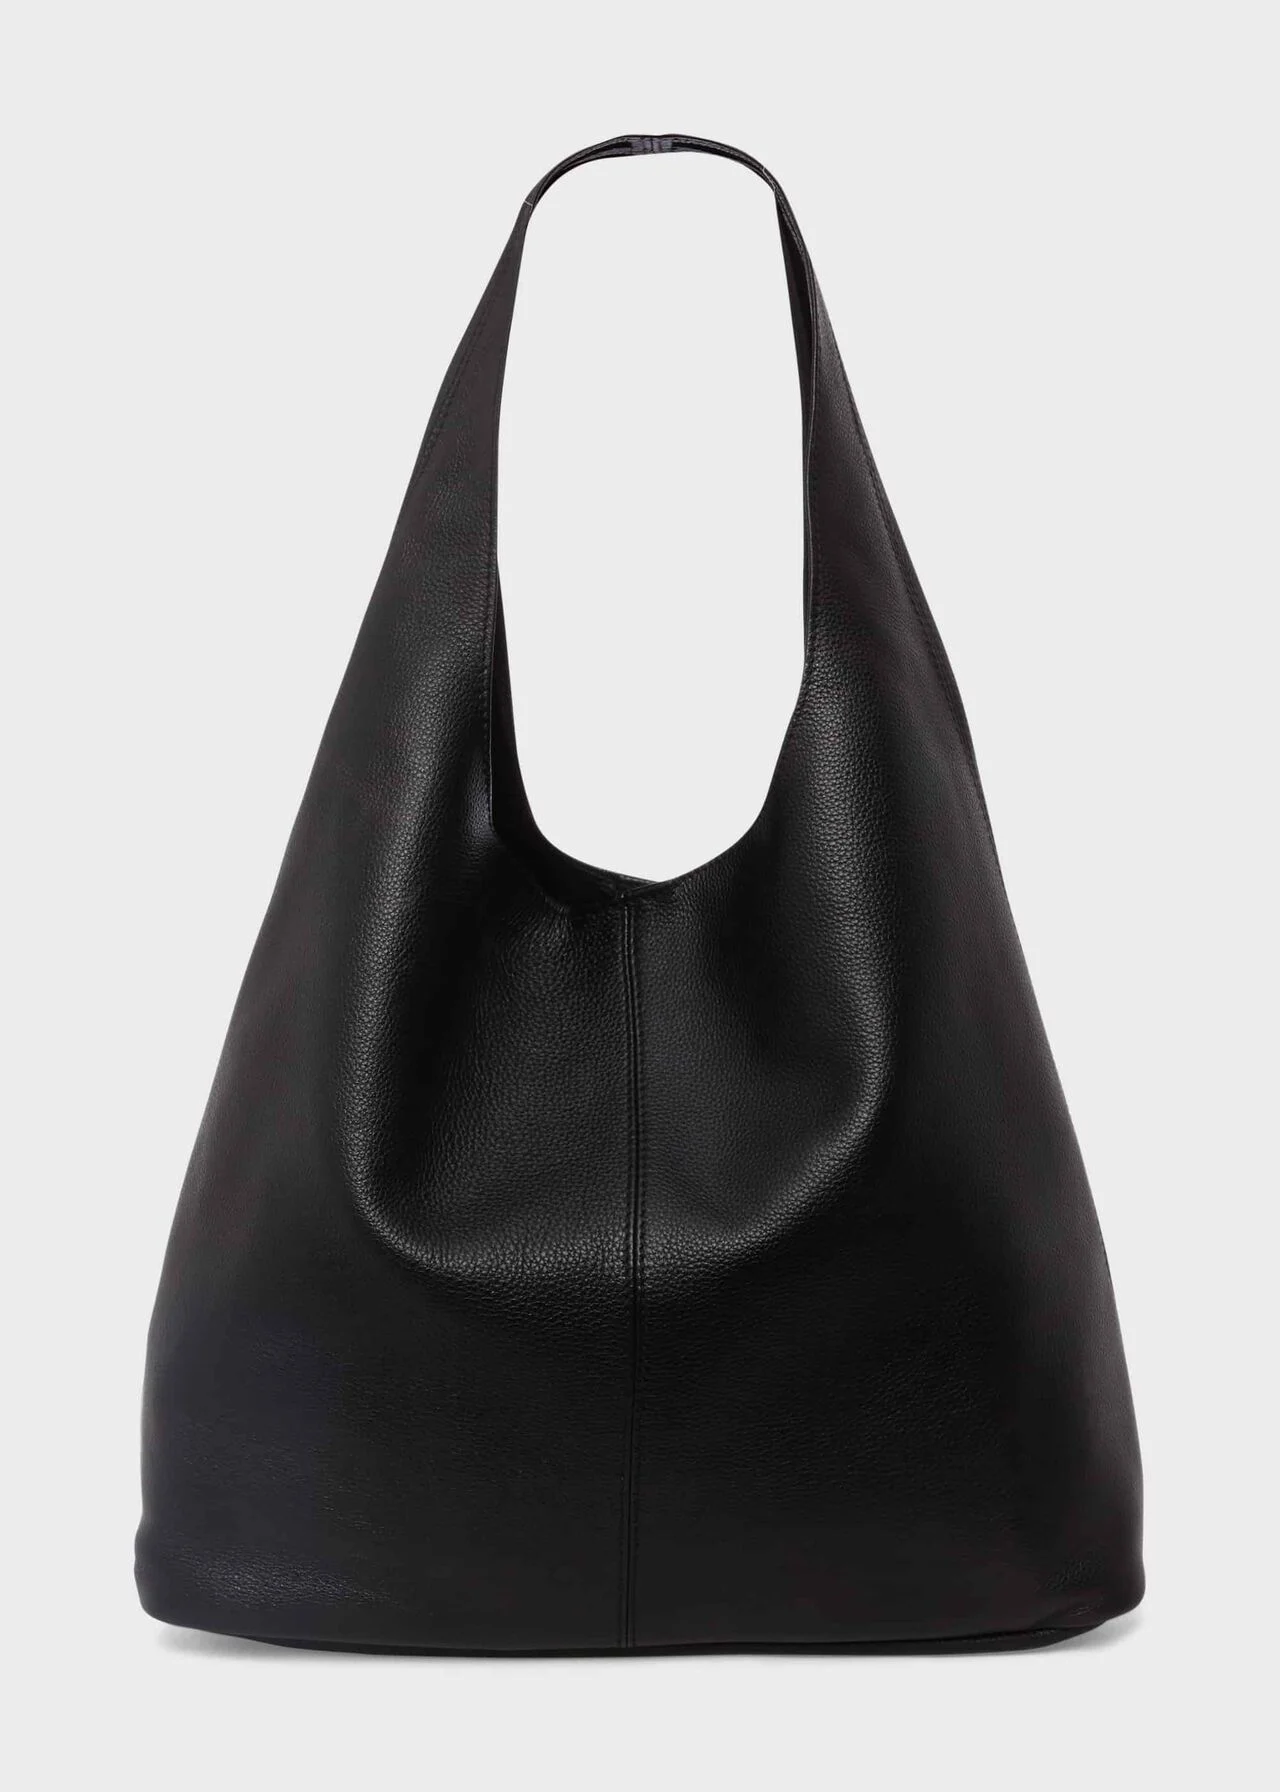 Buy Set of 5 Ladies Handbags Combo Online at Best Price in India on  Naaptol.com